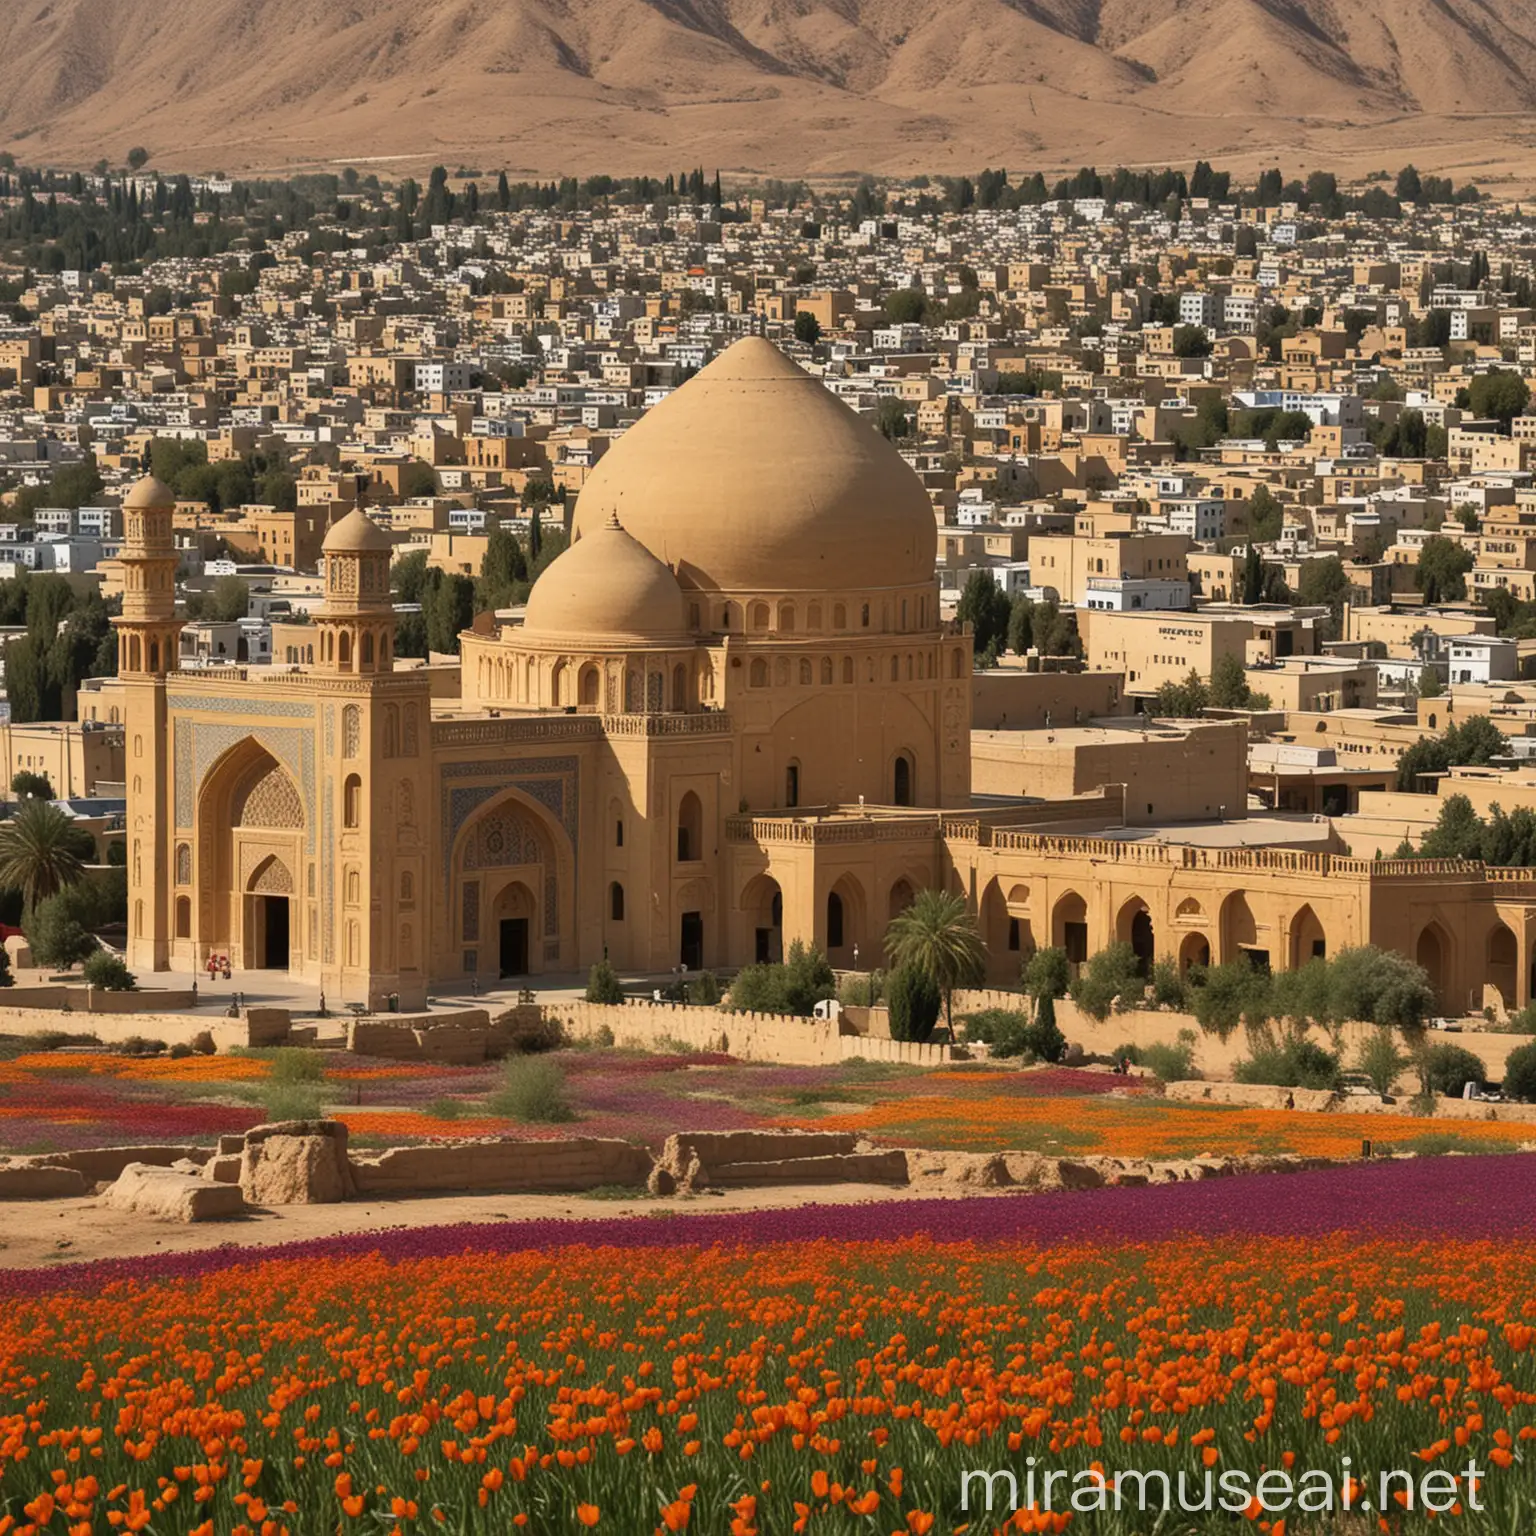 تلفیق عکس زعفران با بناهای تاریخی شیراز
